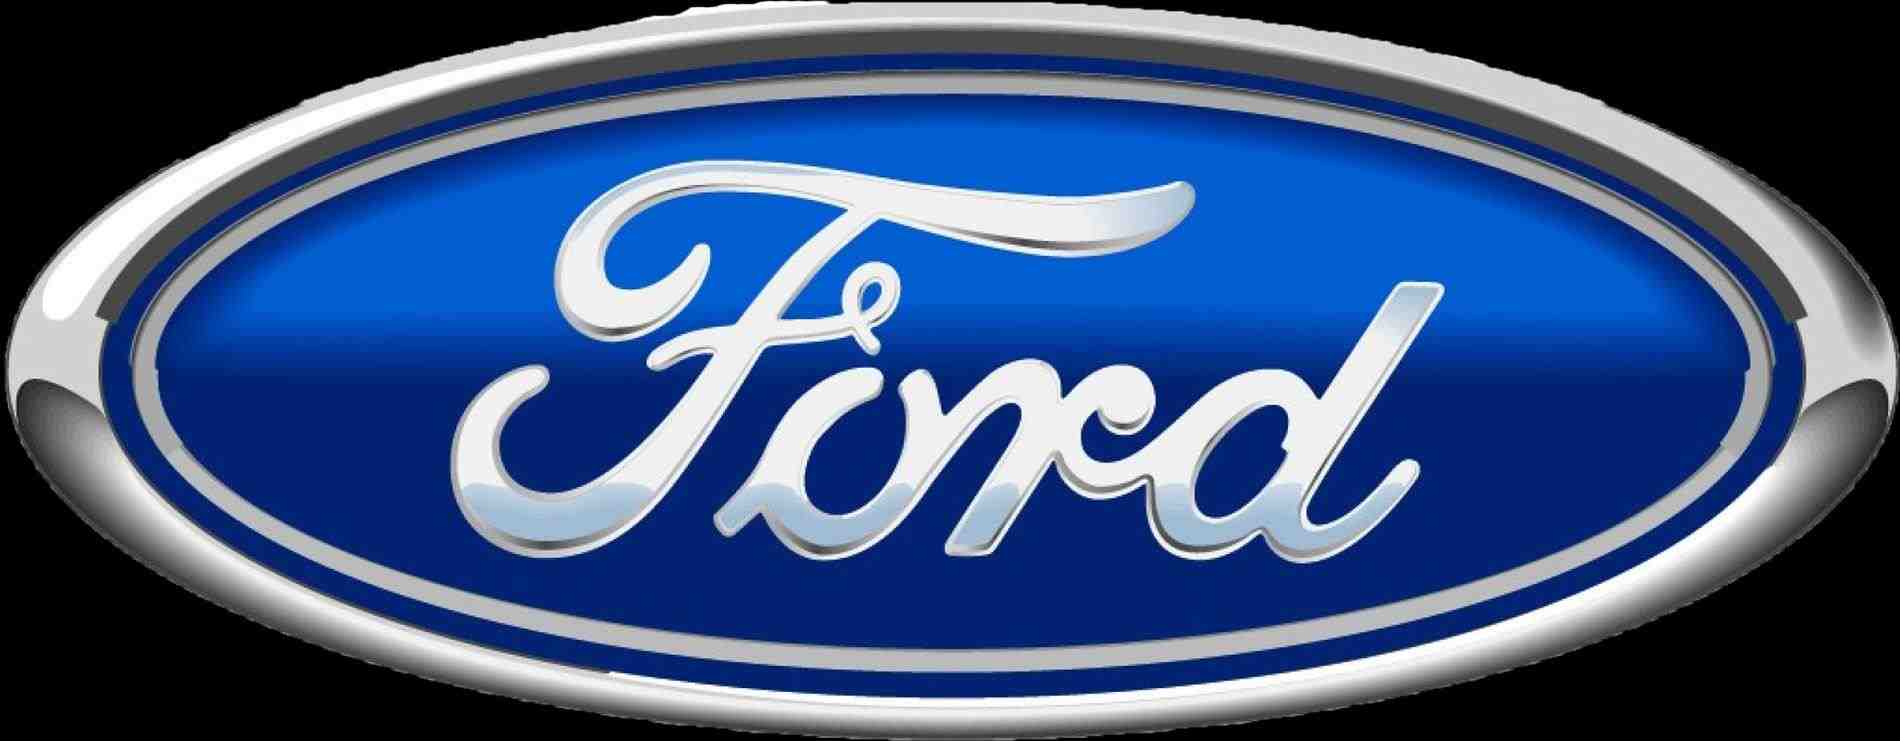 ford logo transparent background